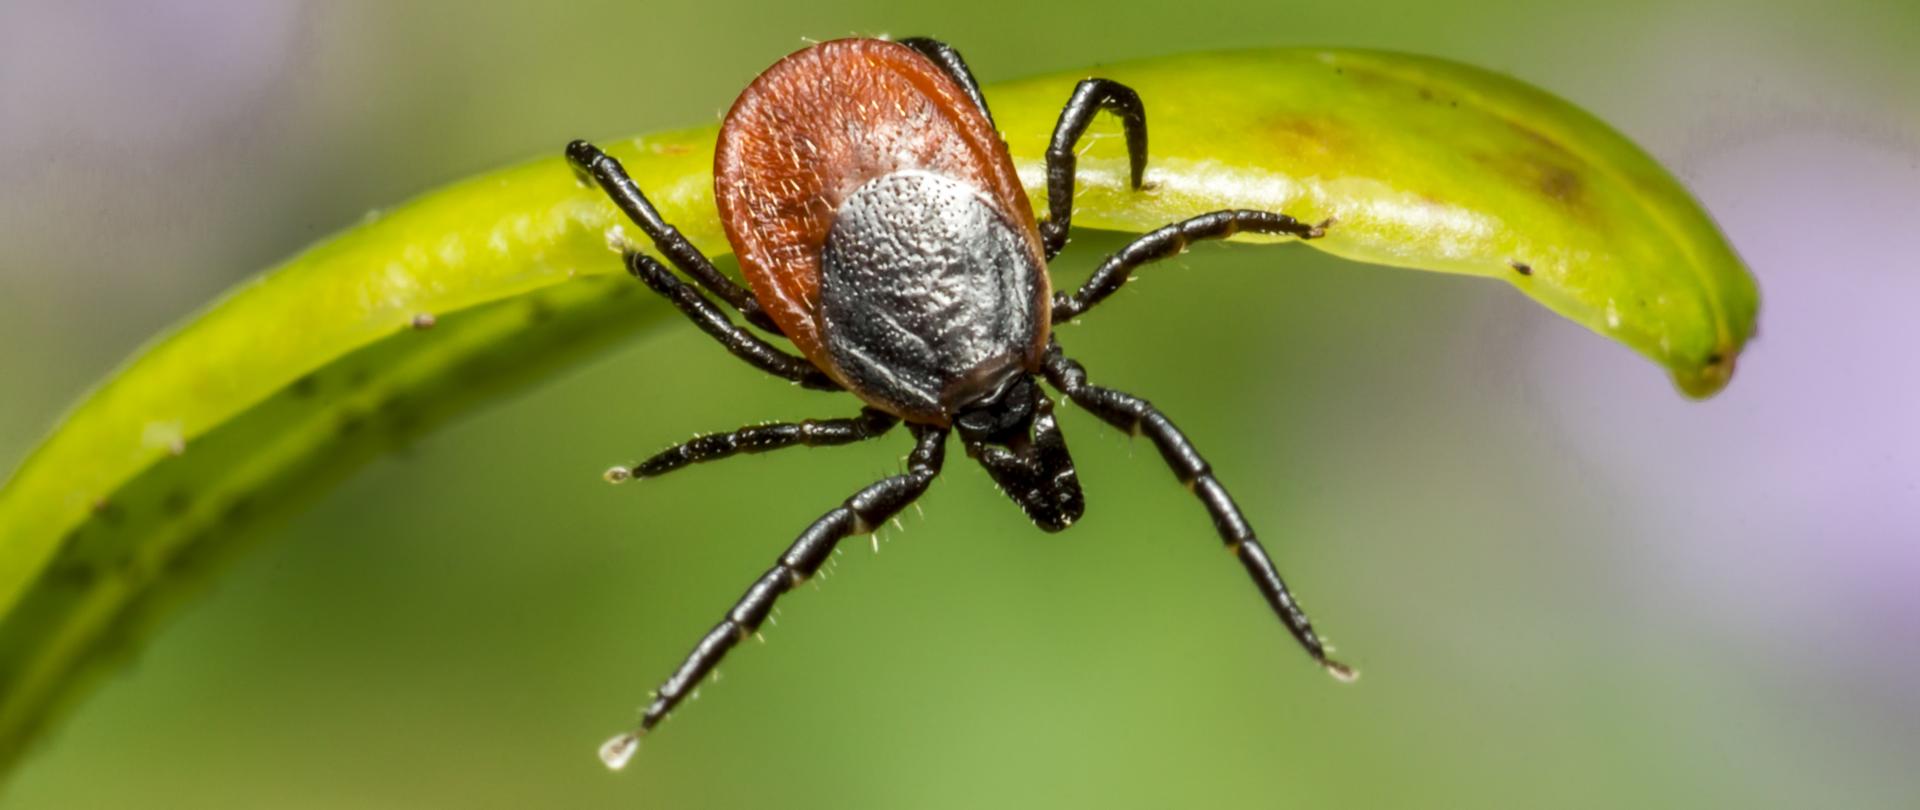 Brown Spider on Green Leaf